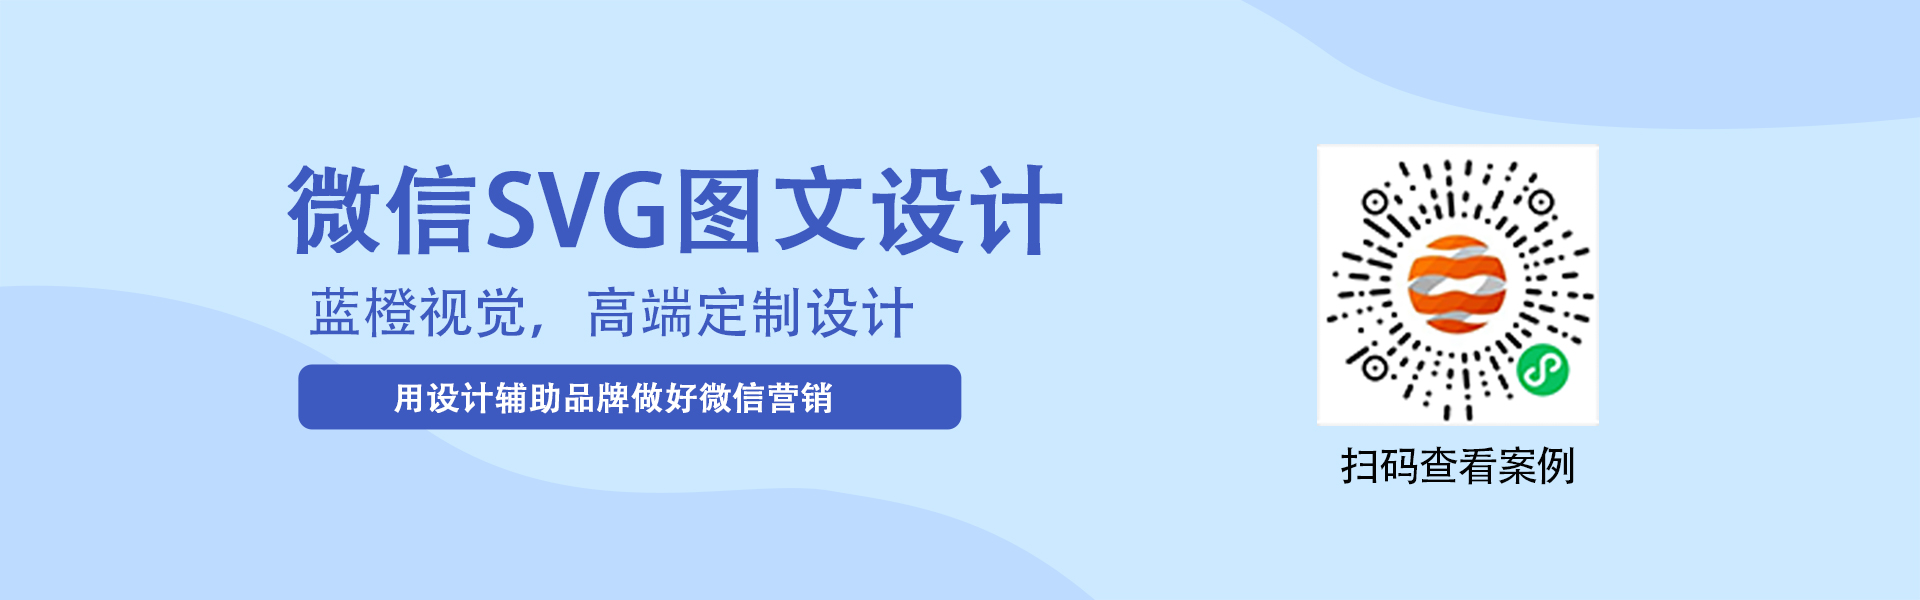 上海微信SVG设计公司